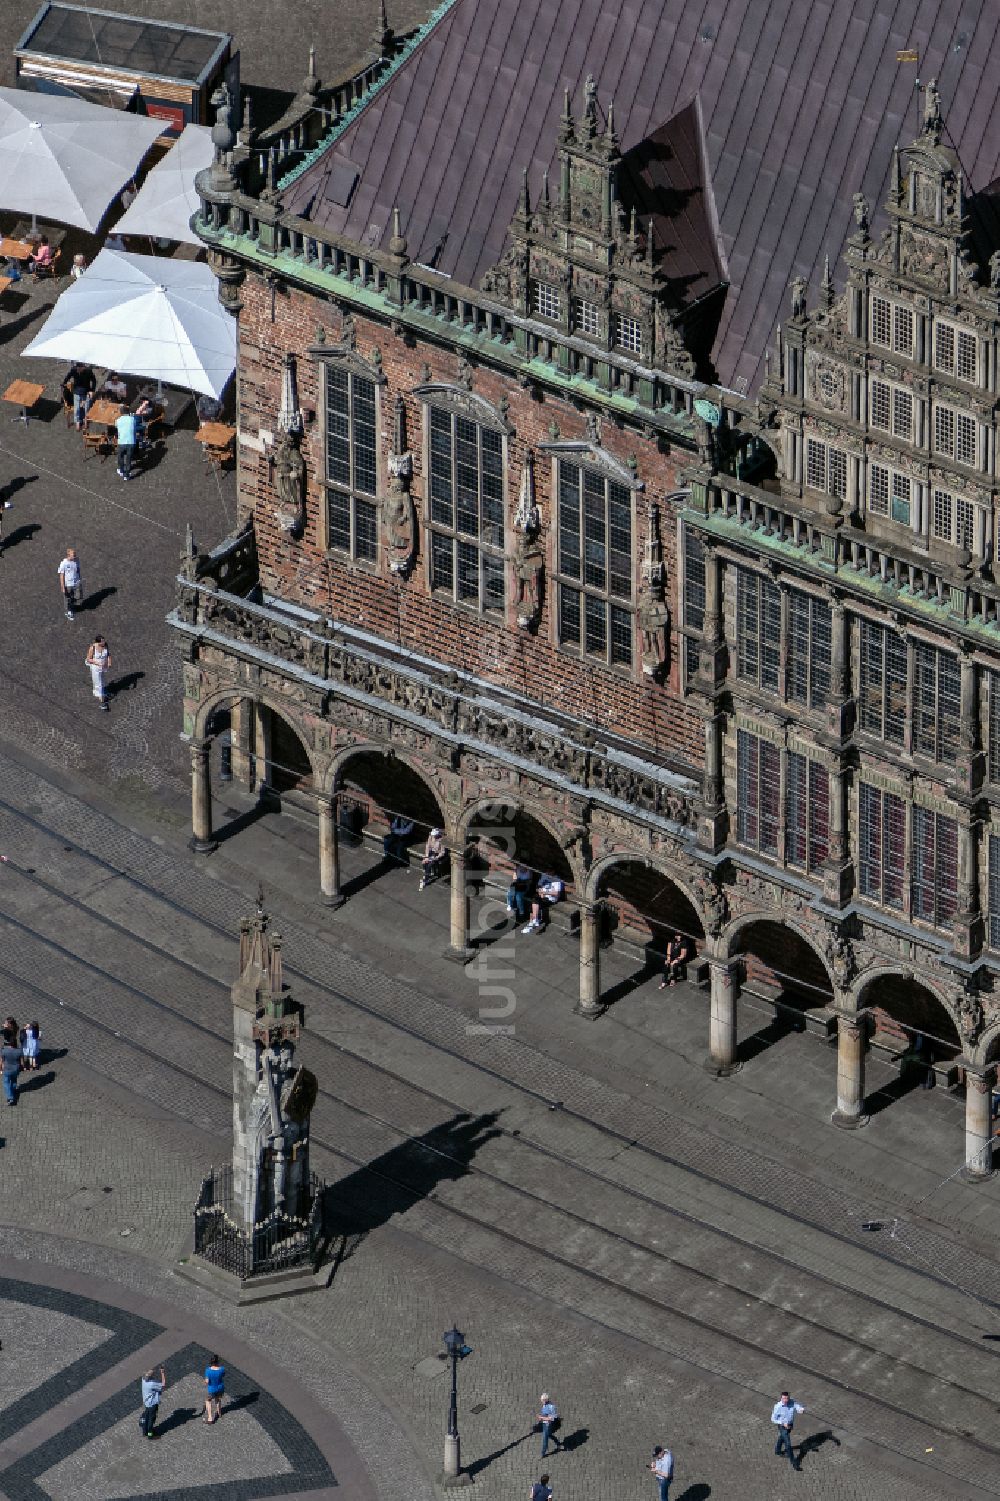 Luftbild Bremen - Gebäude der Stadtverwaltung - Rathaus am Platz Domshof in der Altstadt von Bremen